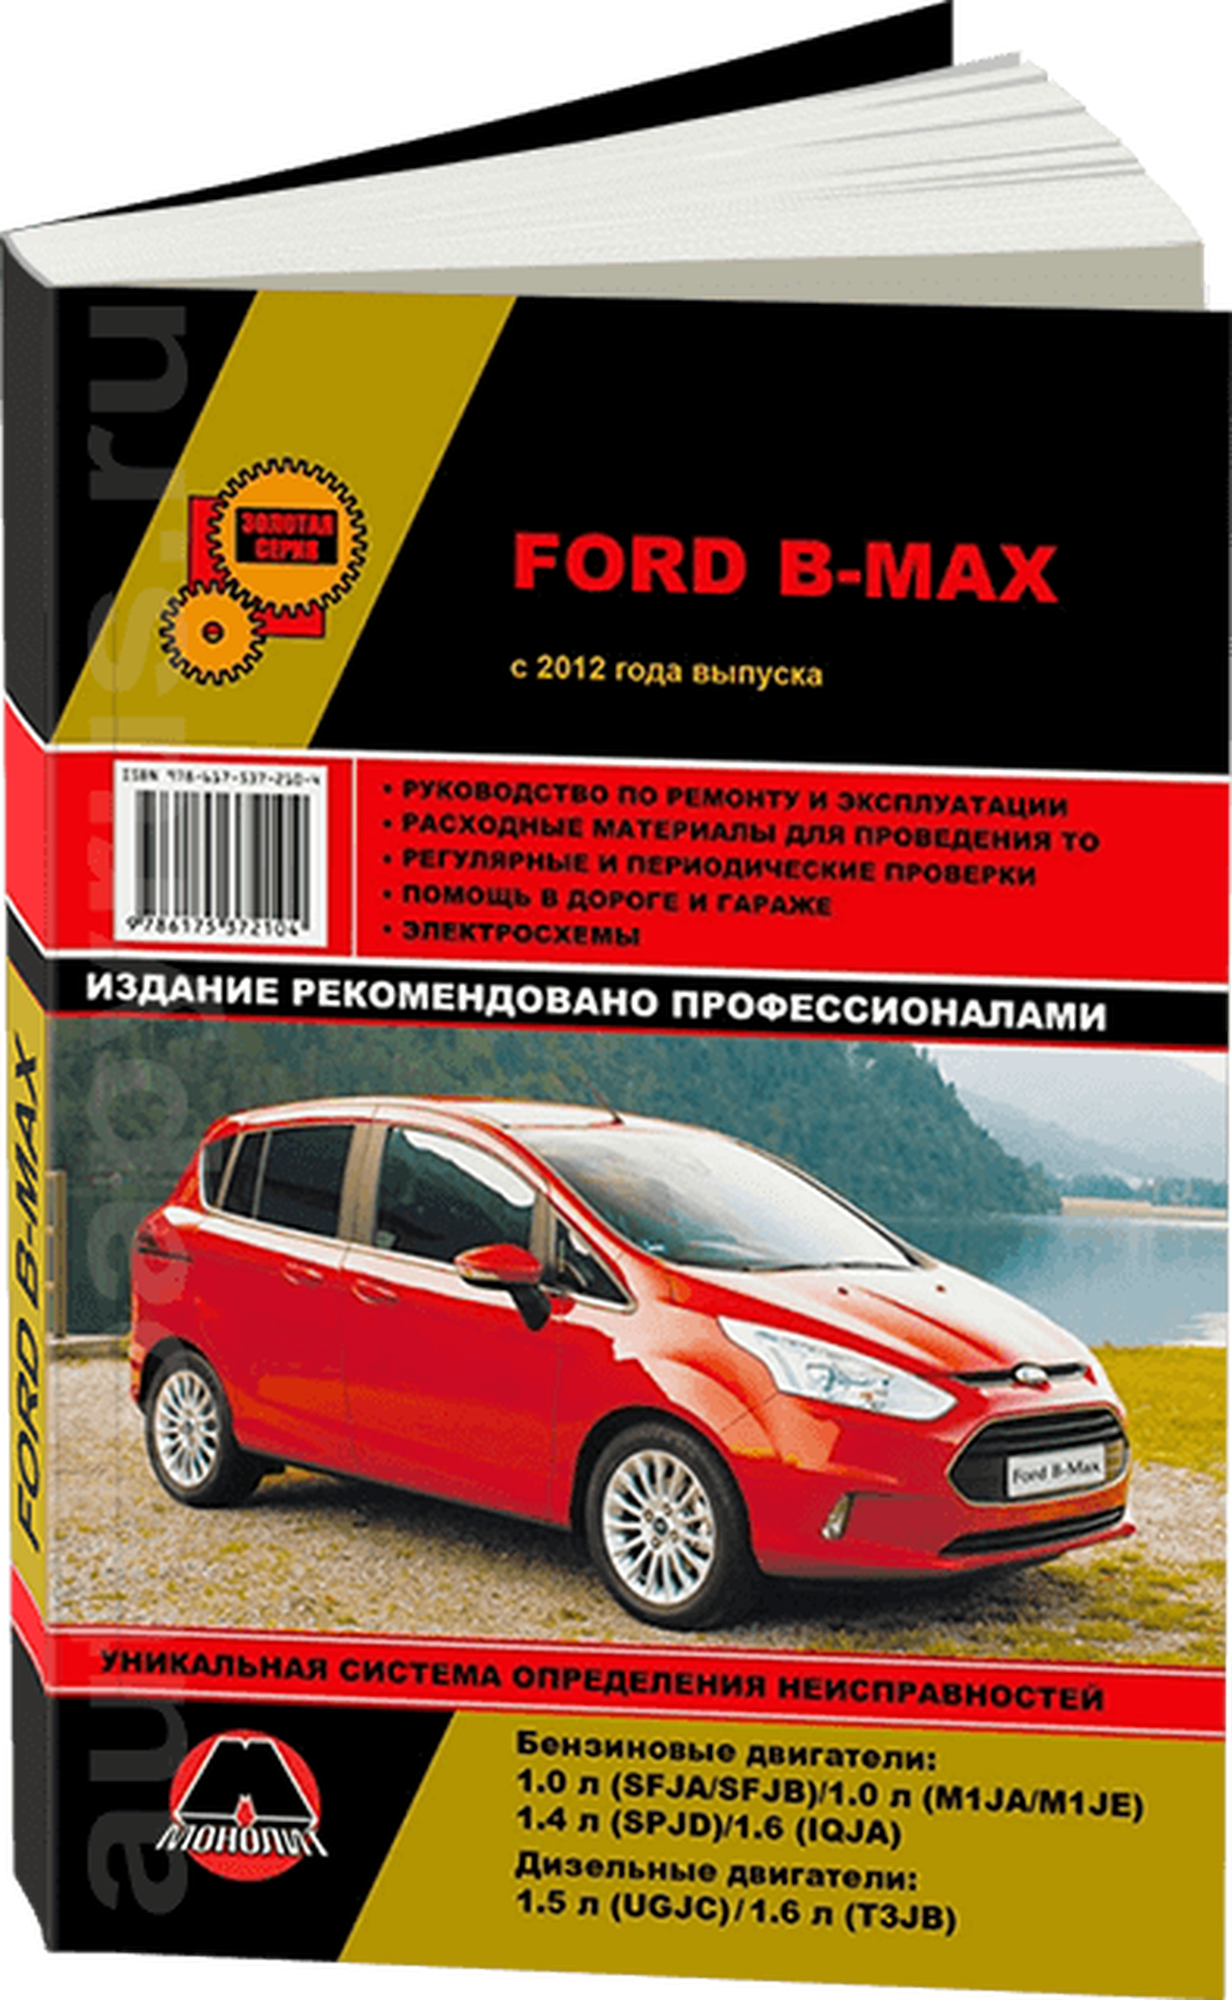 Автокнига: руководство / инструкция по ремонту и эксплуатации FORD B-MAX (форд б-макс) бензин / дизель с 2012 года выпуска, 978-617-537-210-4, издательство Монолит